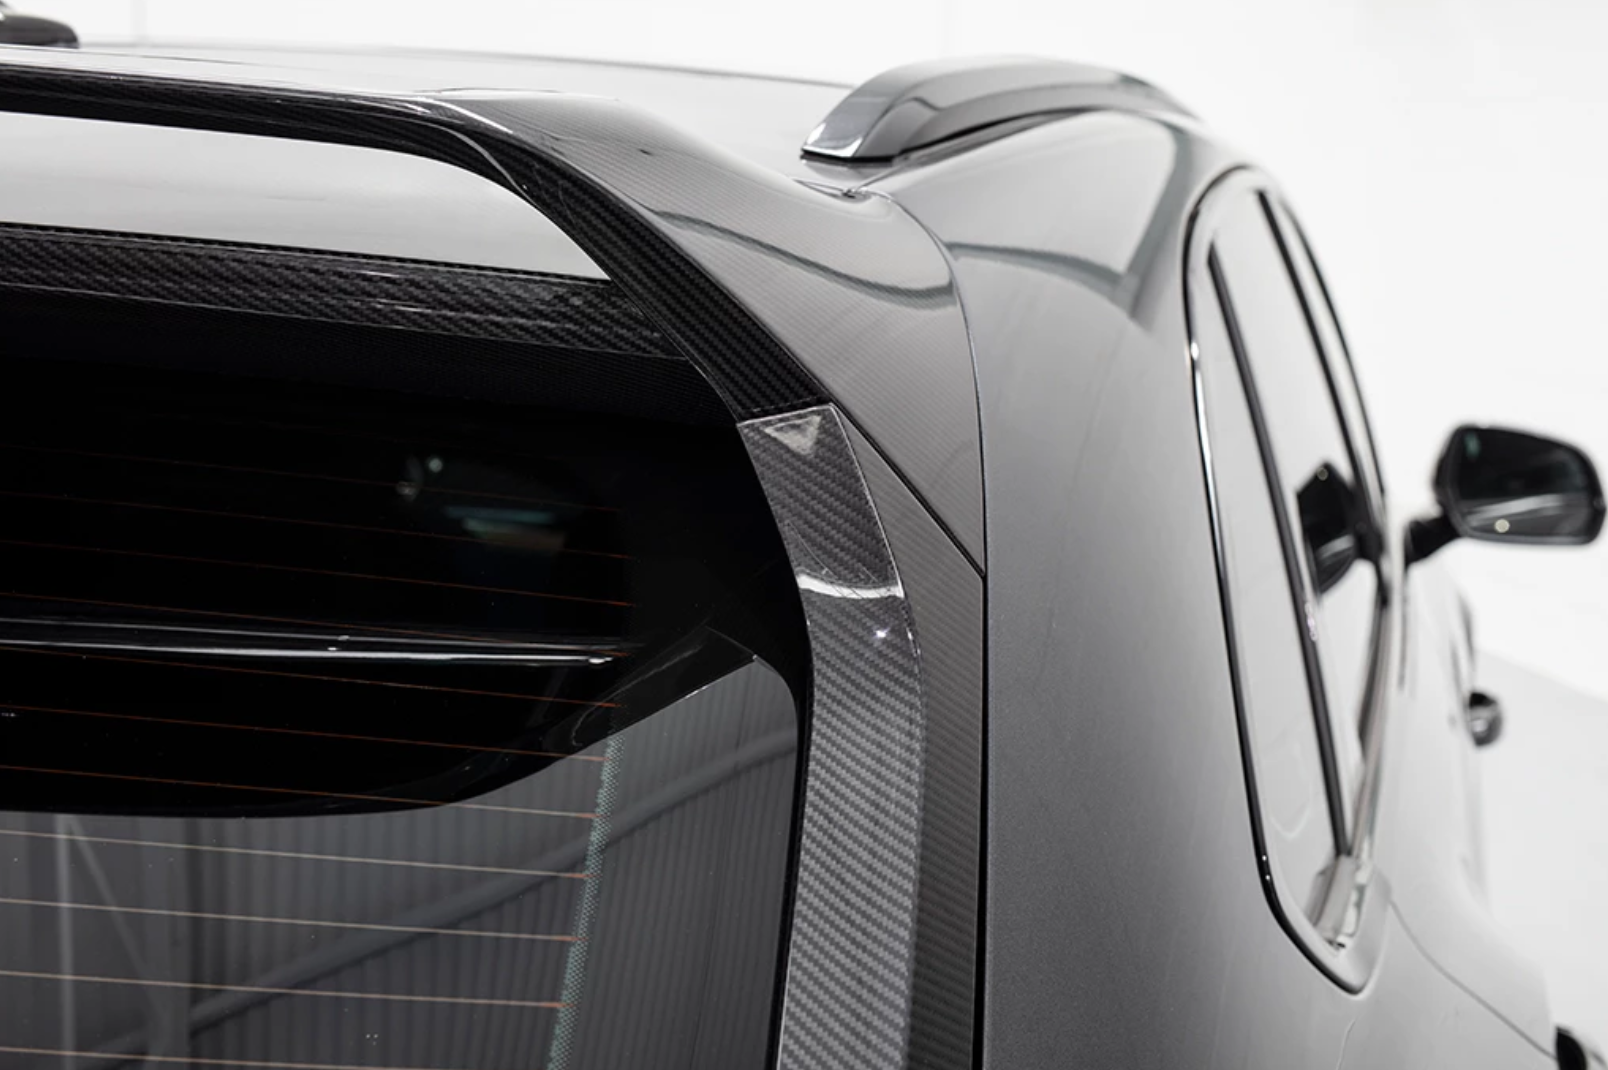 Urban body kit for Bentley Bentayga carbon fiber